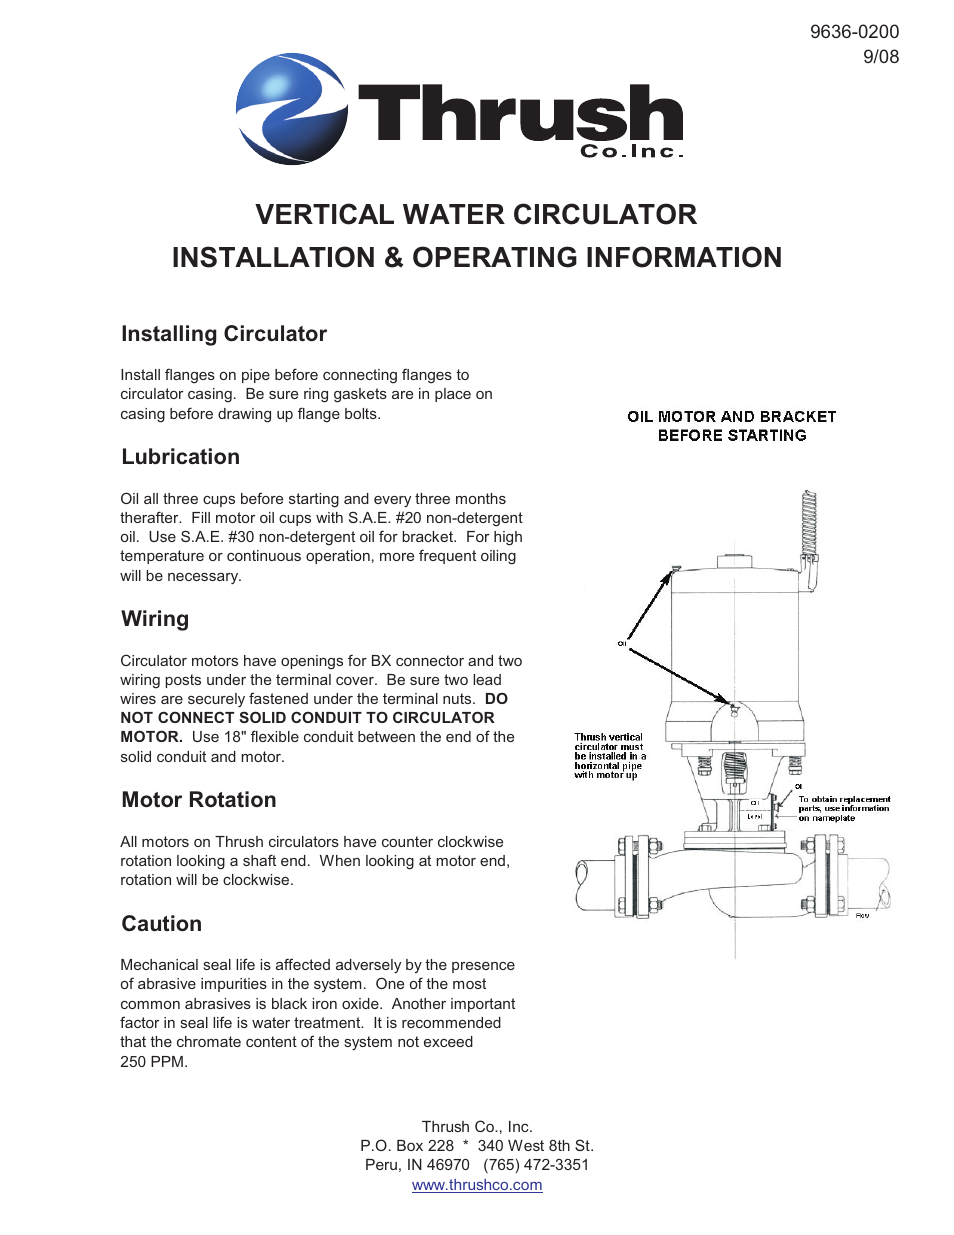 Vertical Water CCirculators